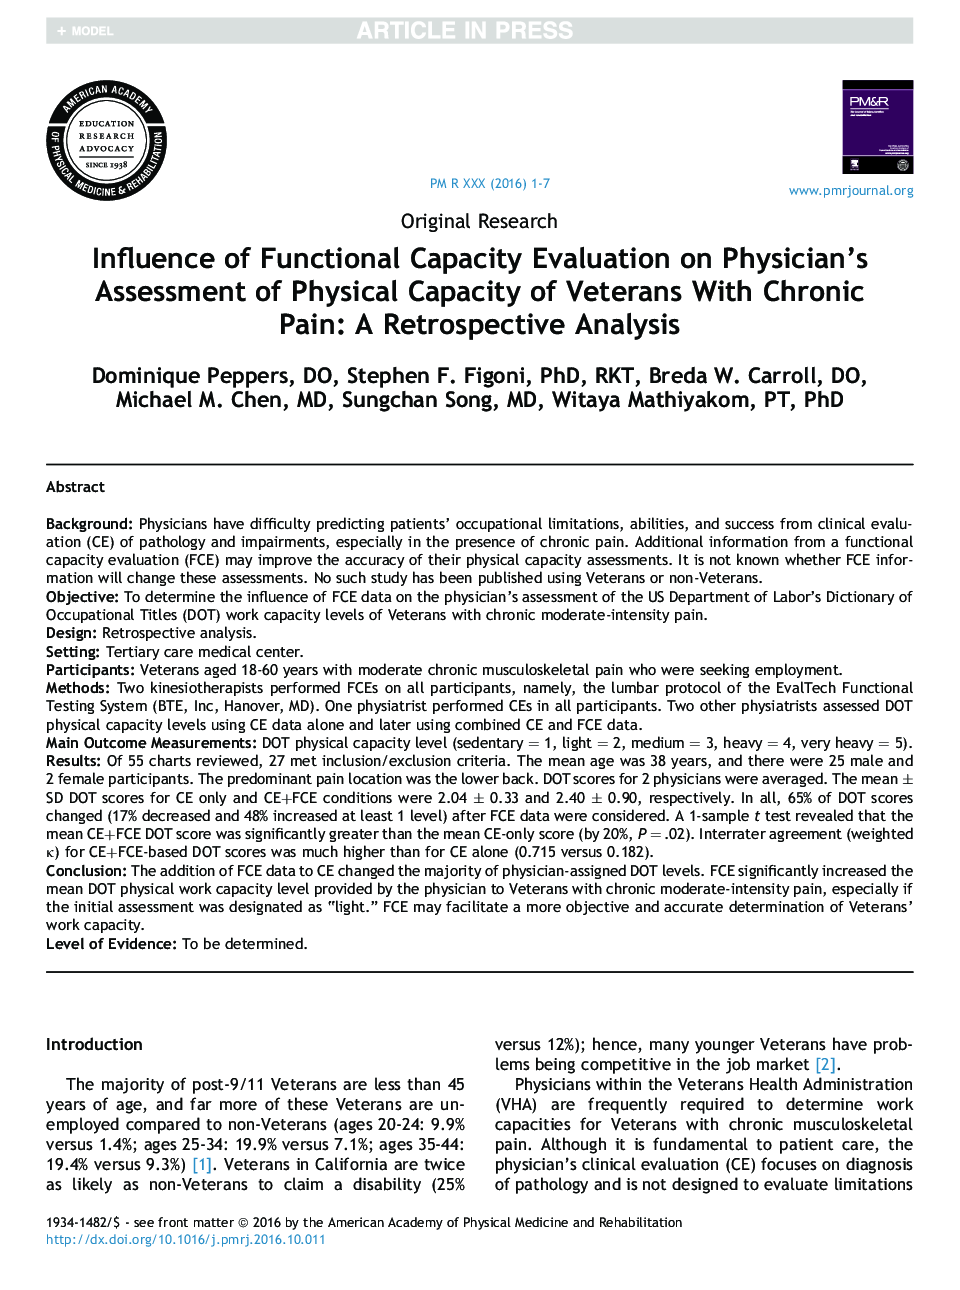 تأثیر ارزیابی ظرفیت عملکرد بر ارزیابی توانایی فیزیکی جانبازان با درد مزمن پزشک: یک تحلیل گذشتهنگر 